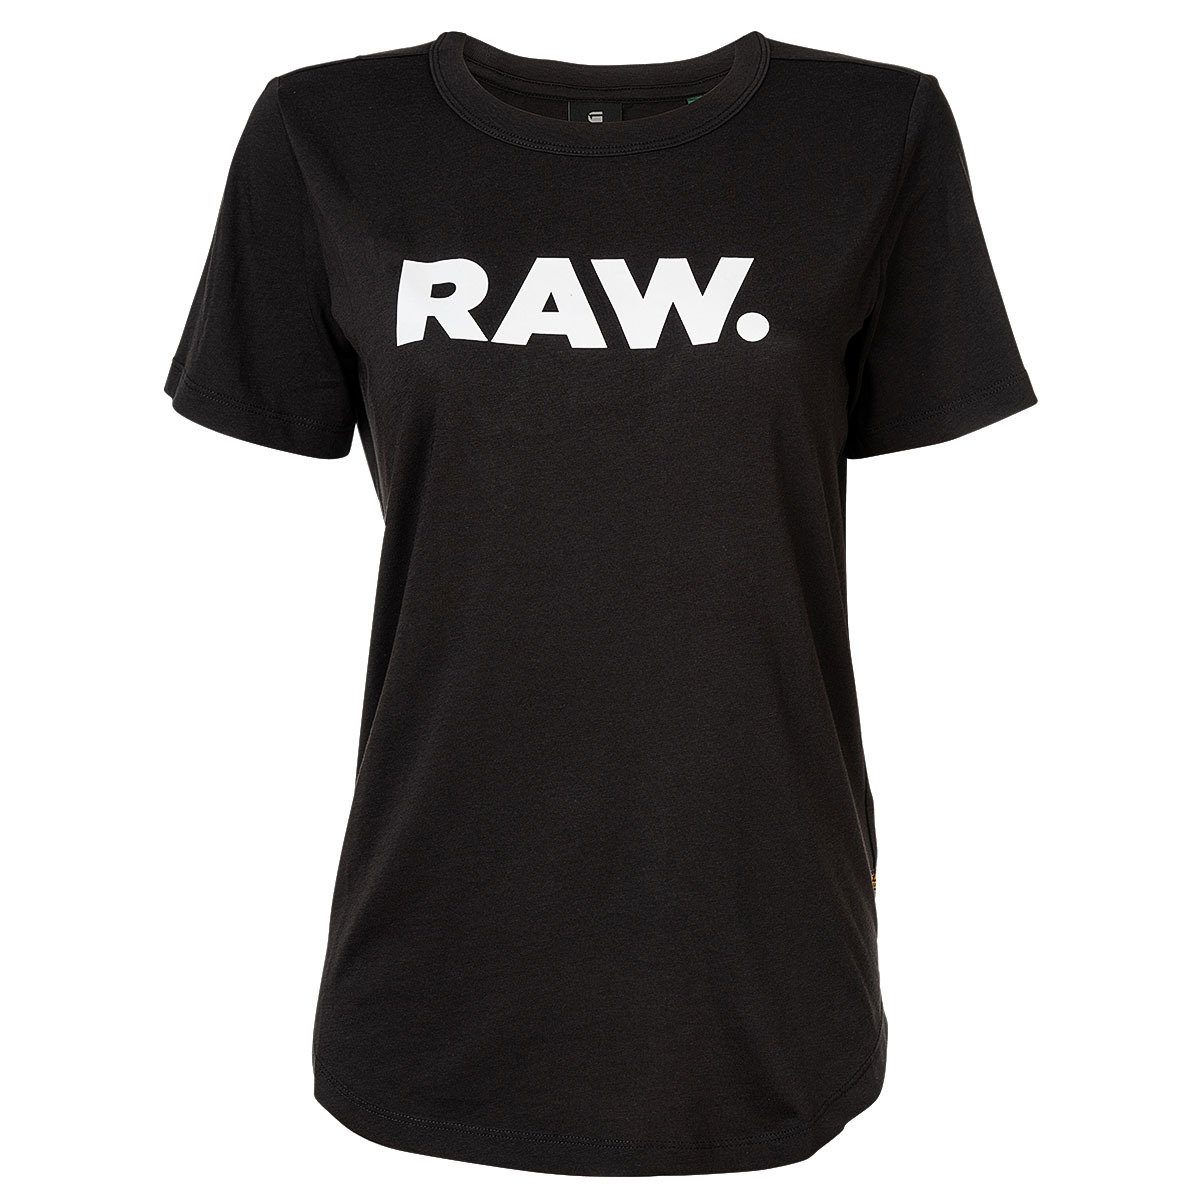 G-Star RAW T-Shirt Damen Schwarz - Rundhals, T-Shirt RAW. Kurzarm slim